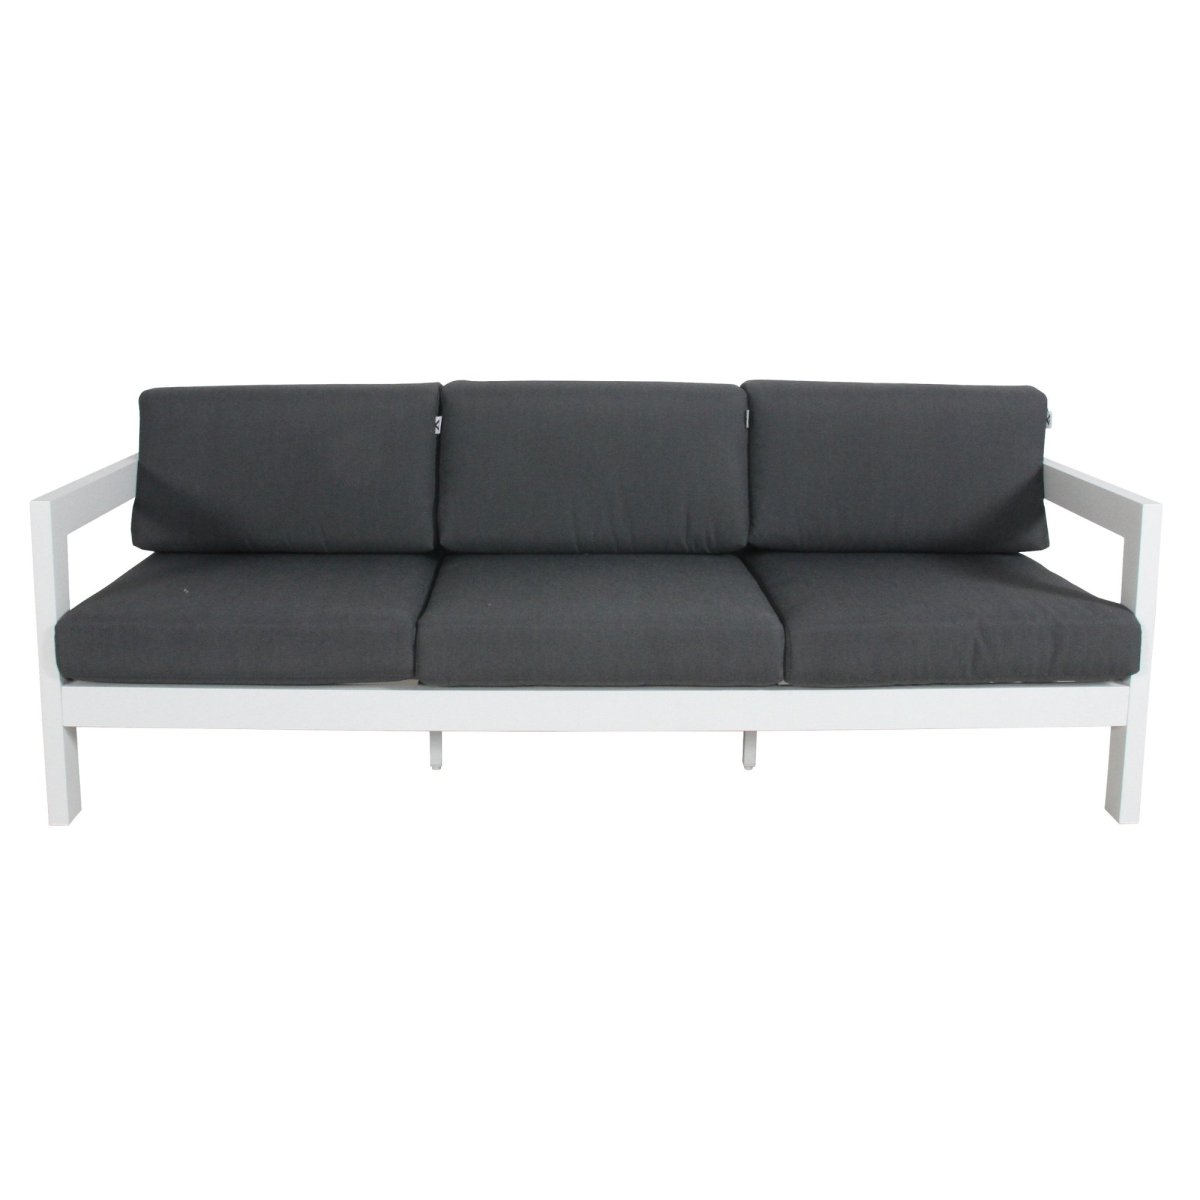 Outie 3pc Set 1+2+3 Seater Outdoor Sofa Lounge Aluminium Frame White - Outdoorium